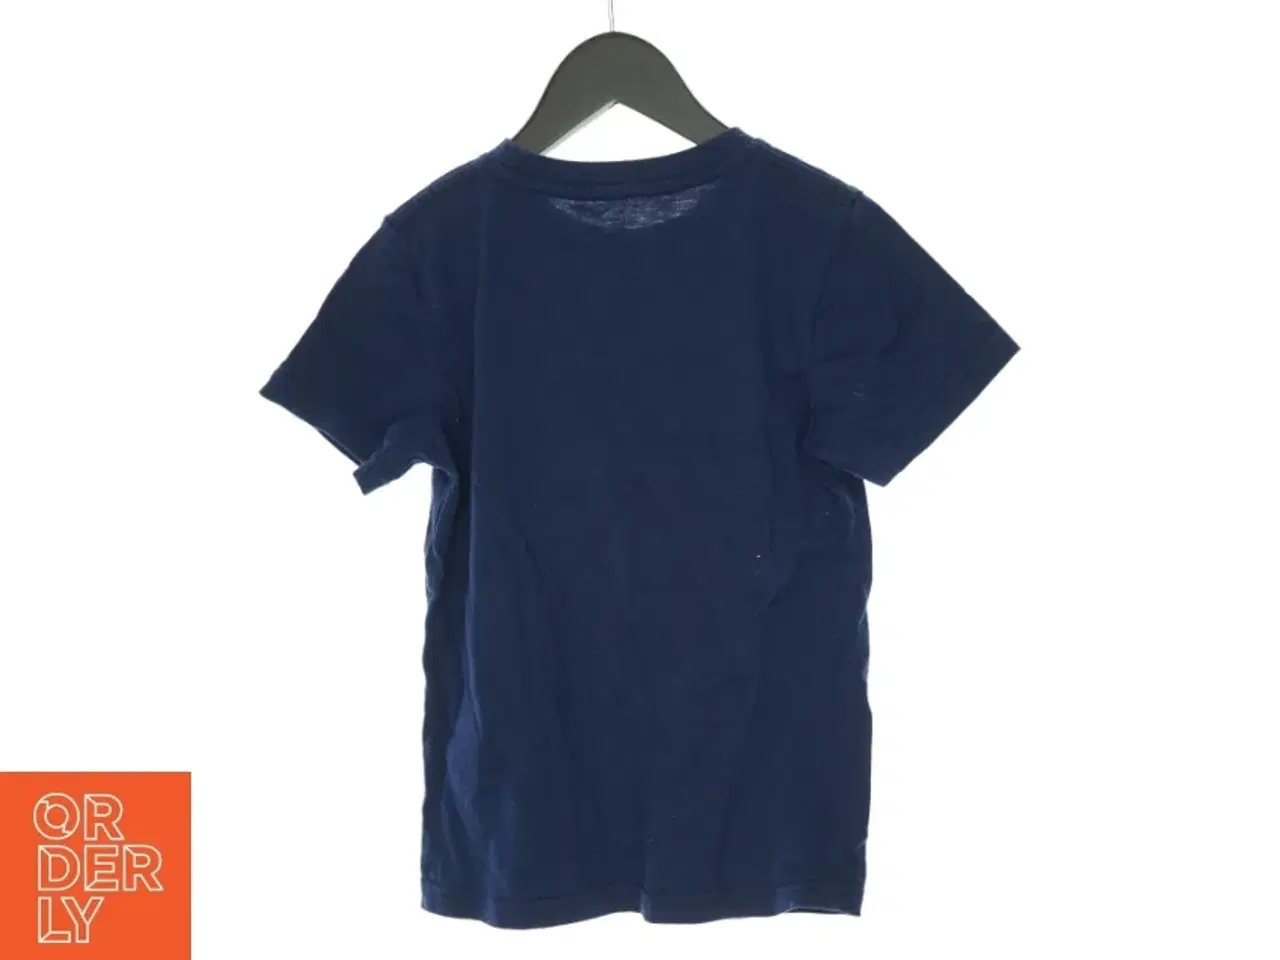 Billede 2 - T-shirt fra Poul Frank